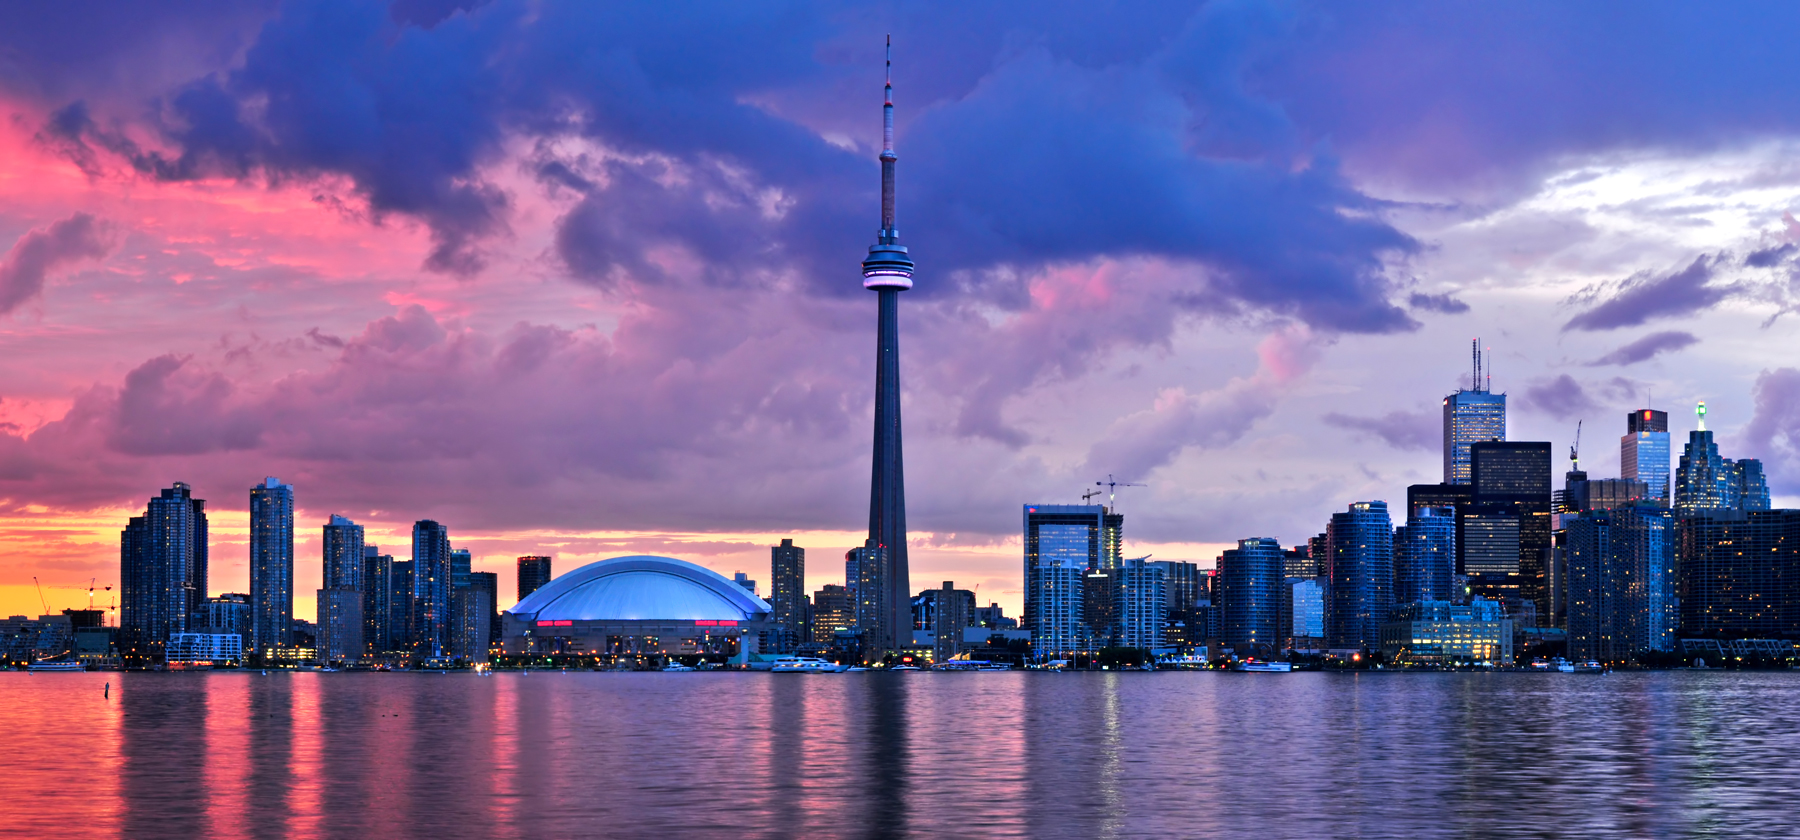 Mudarse a Toronto: Información útil y consejos para trasladarse a Toronto como expatriado